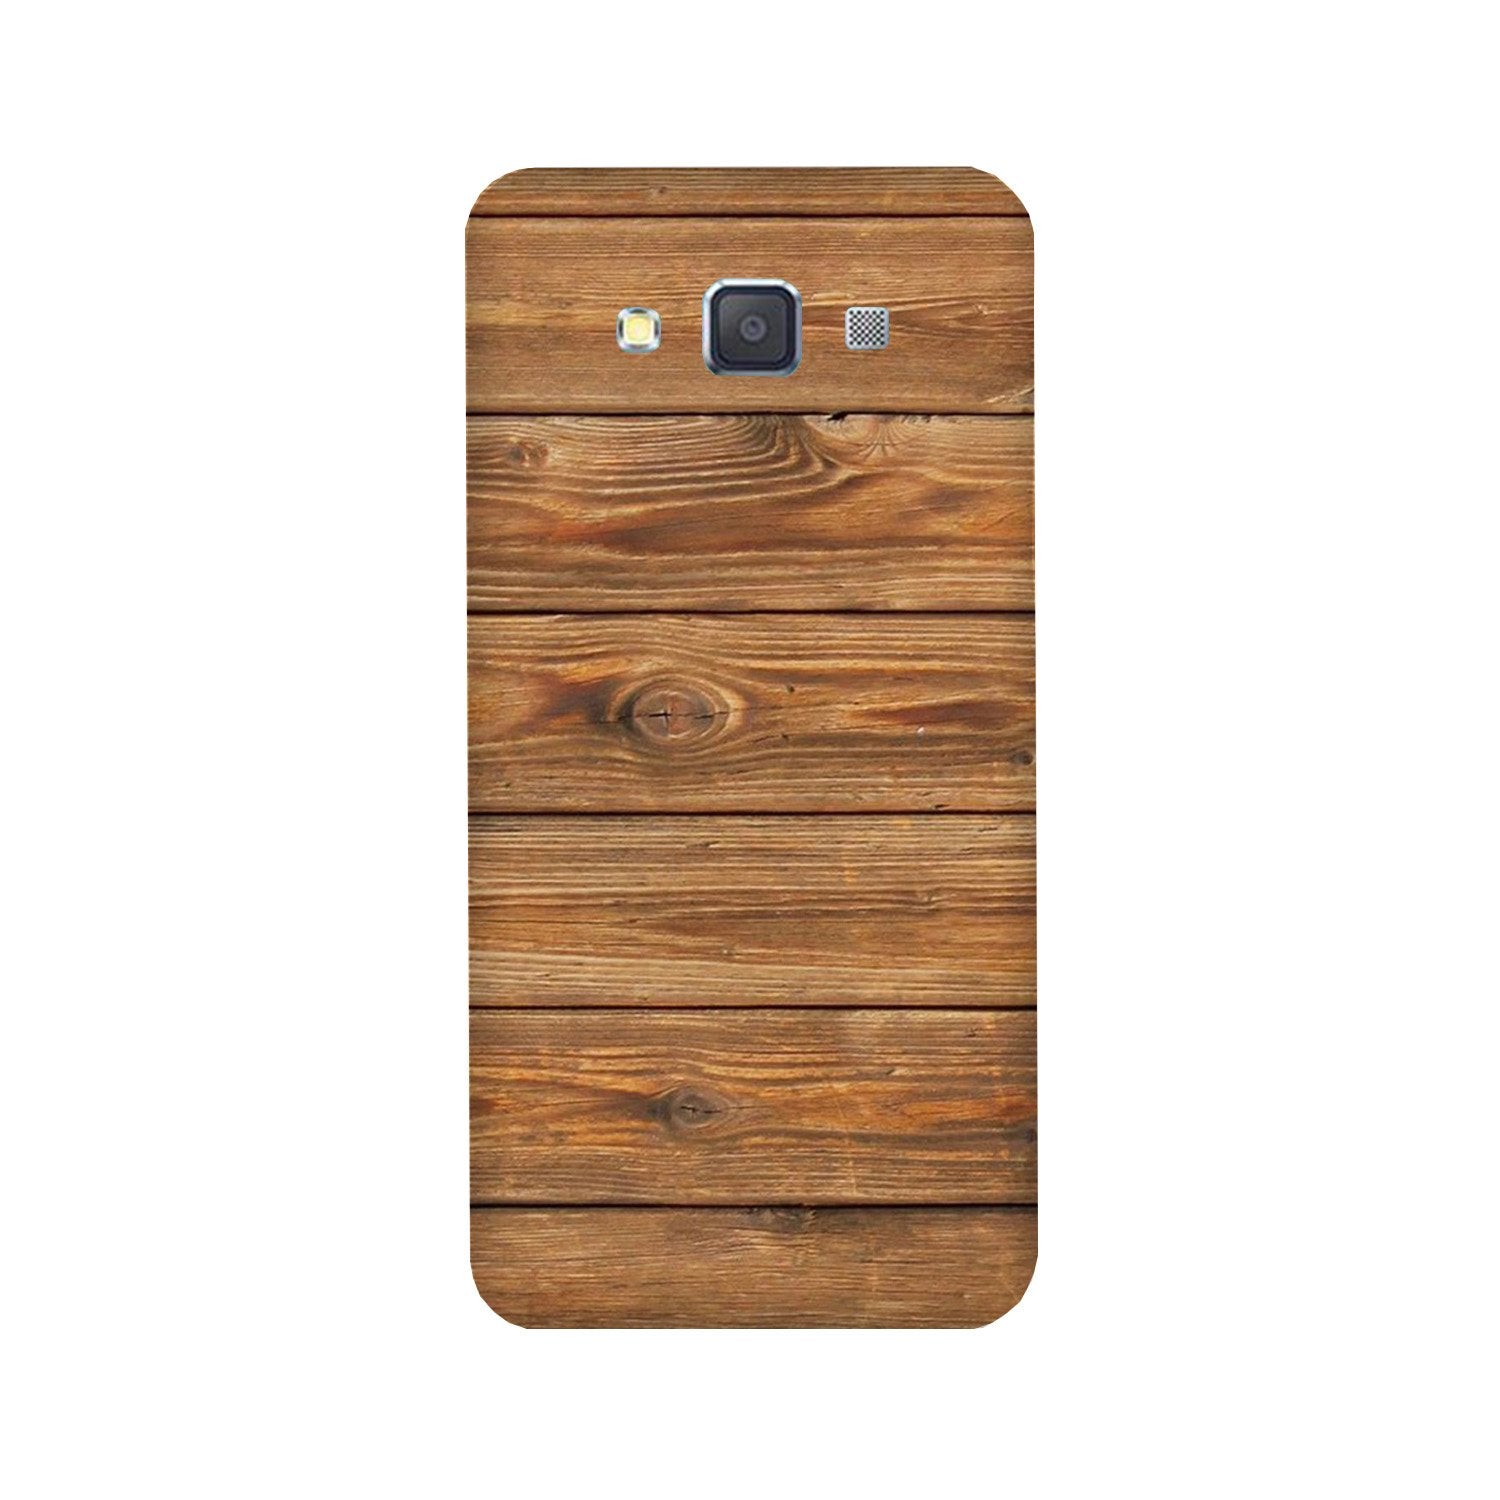 Wooden Look Case for Galaxy E7  (Design - 113)